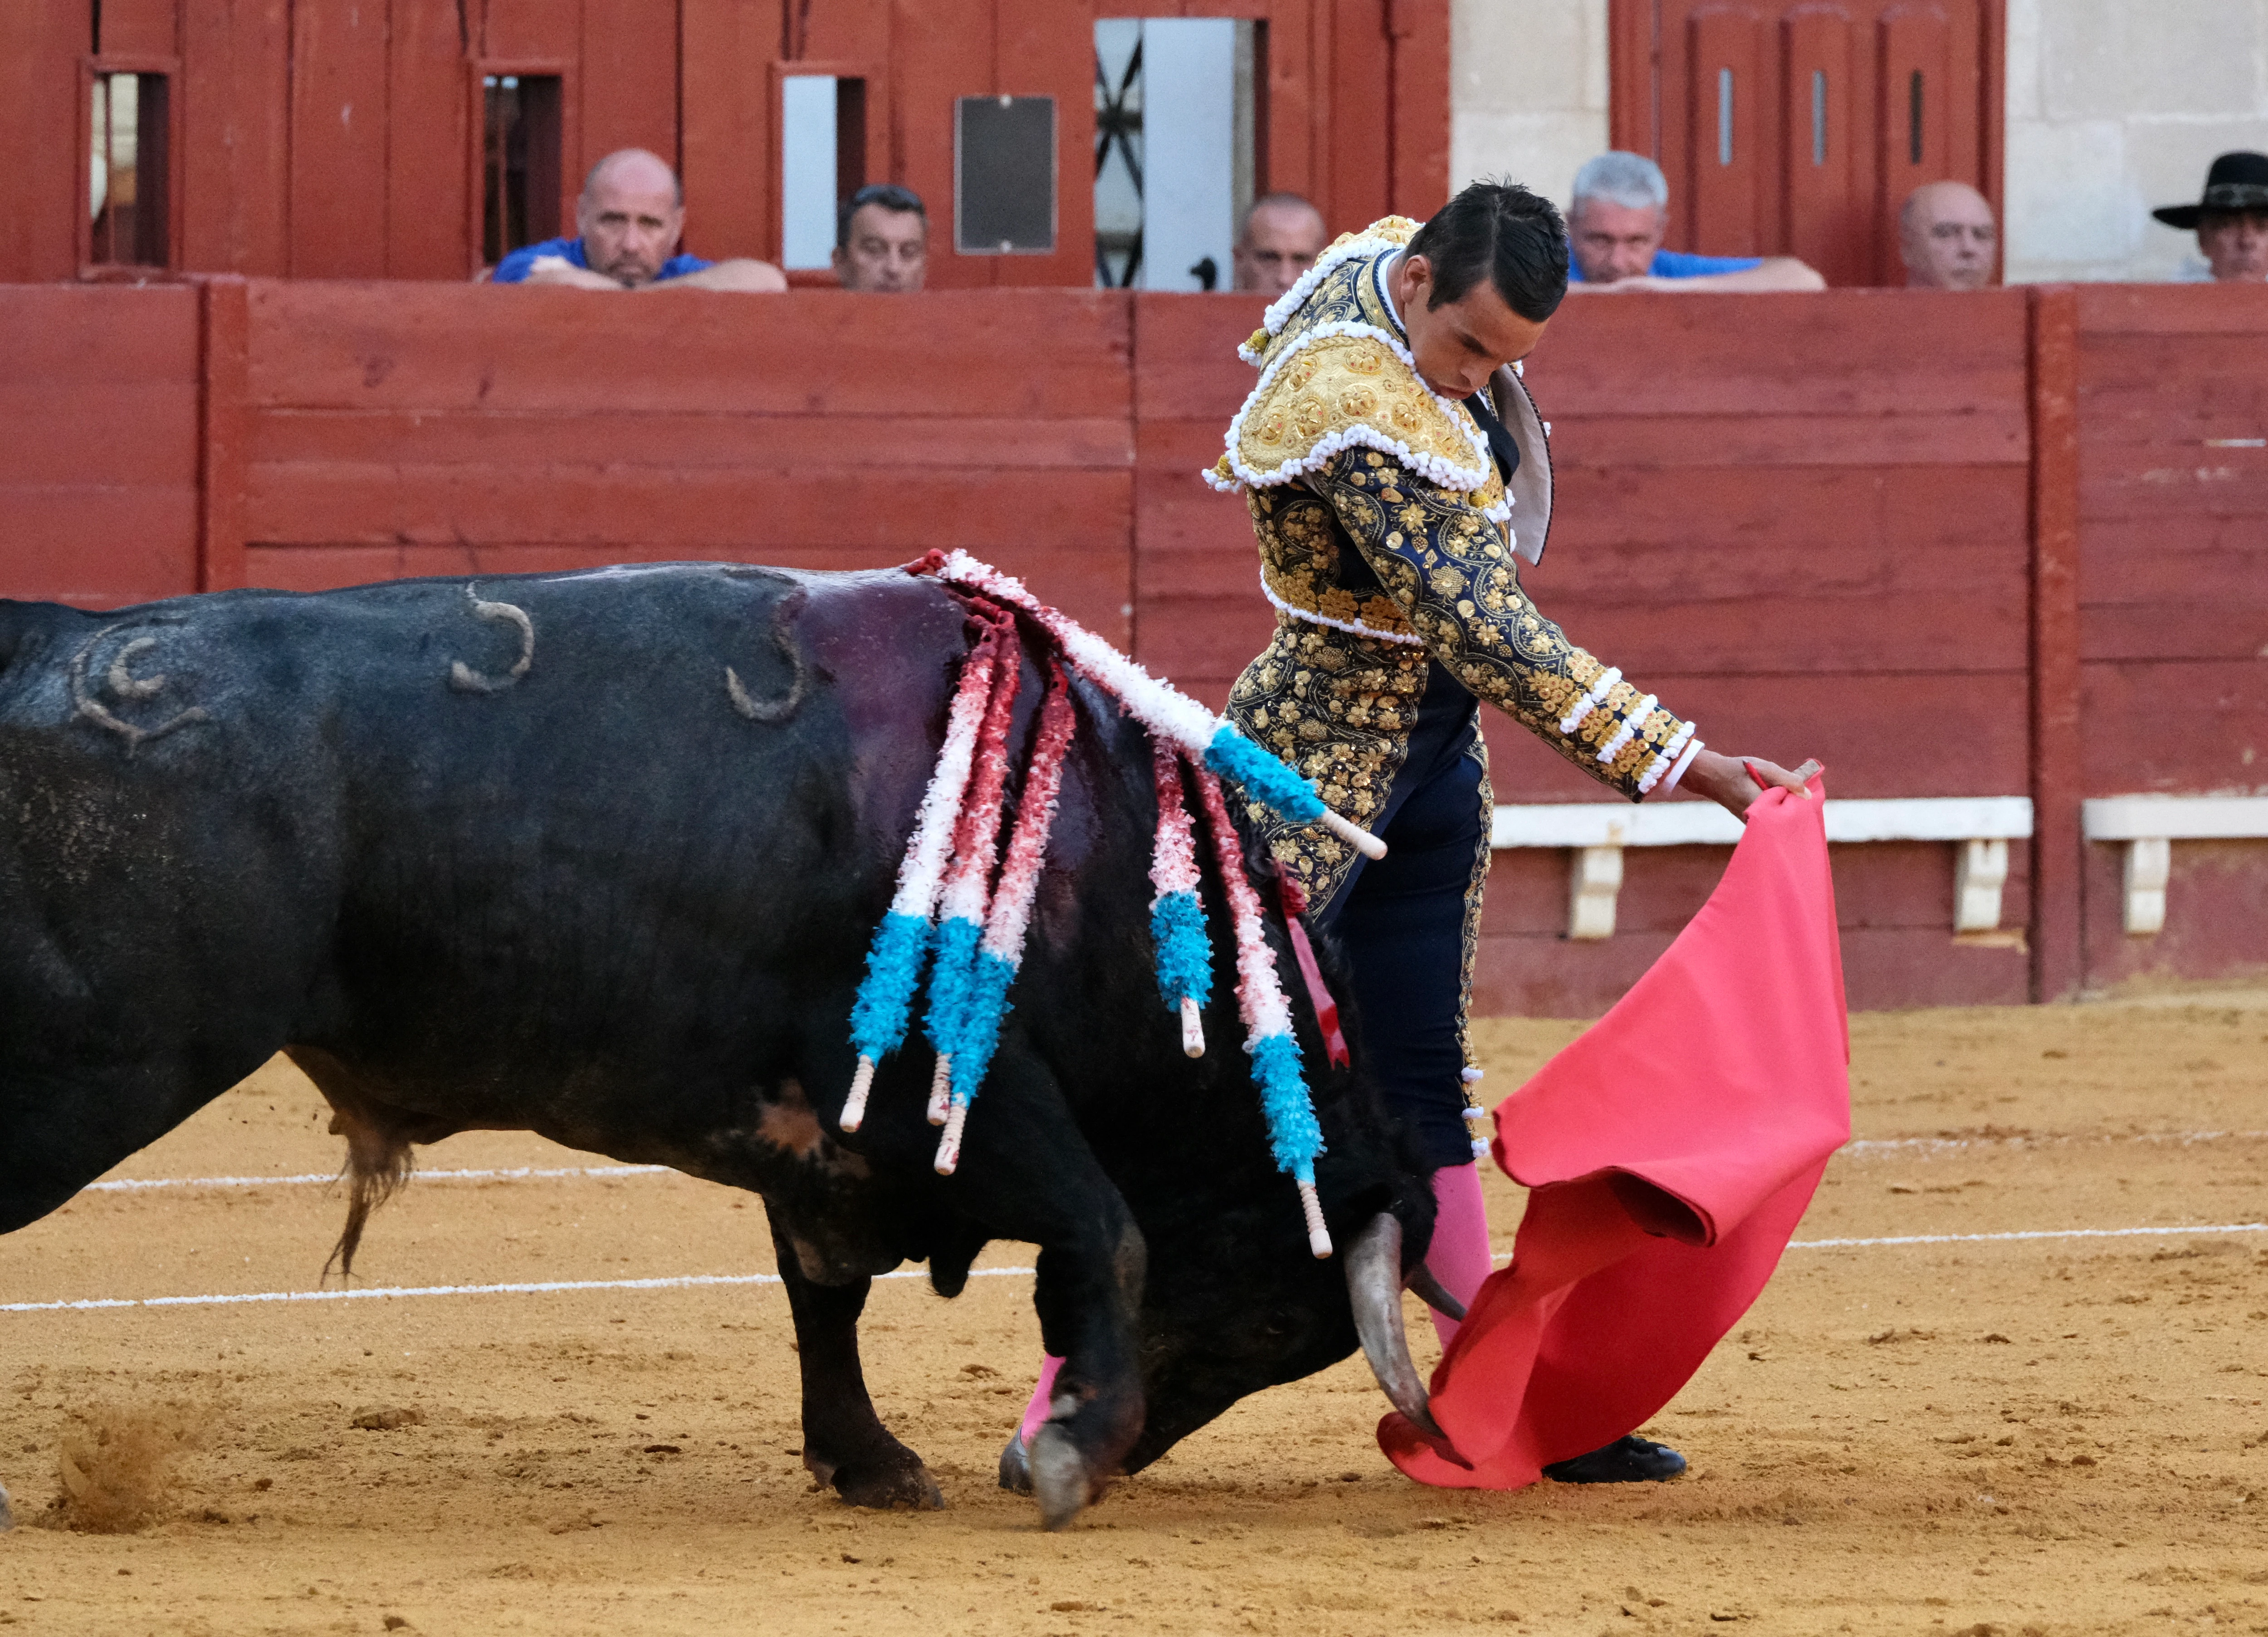 La corrida de toros de El Puerto, en imágenes